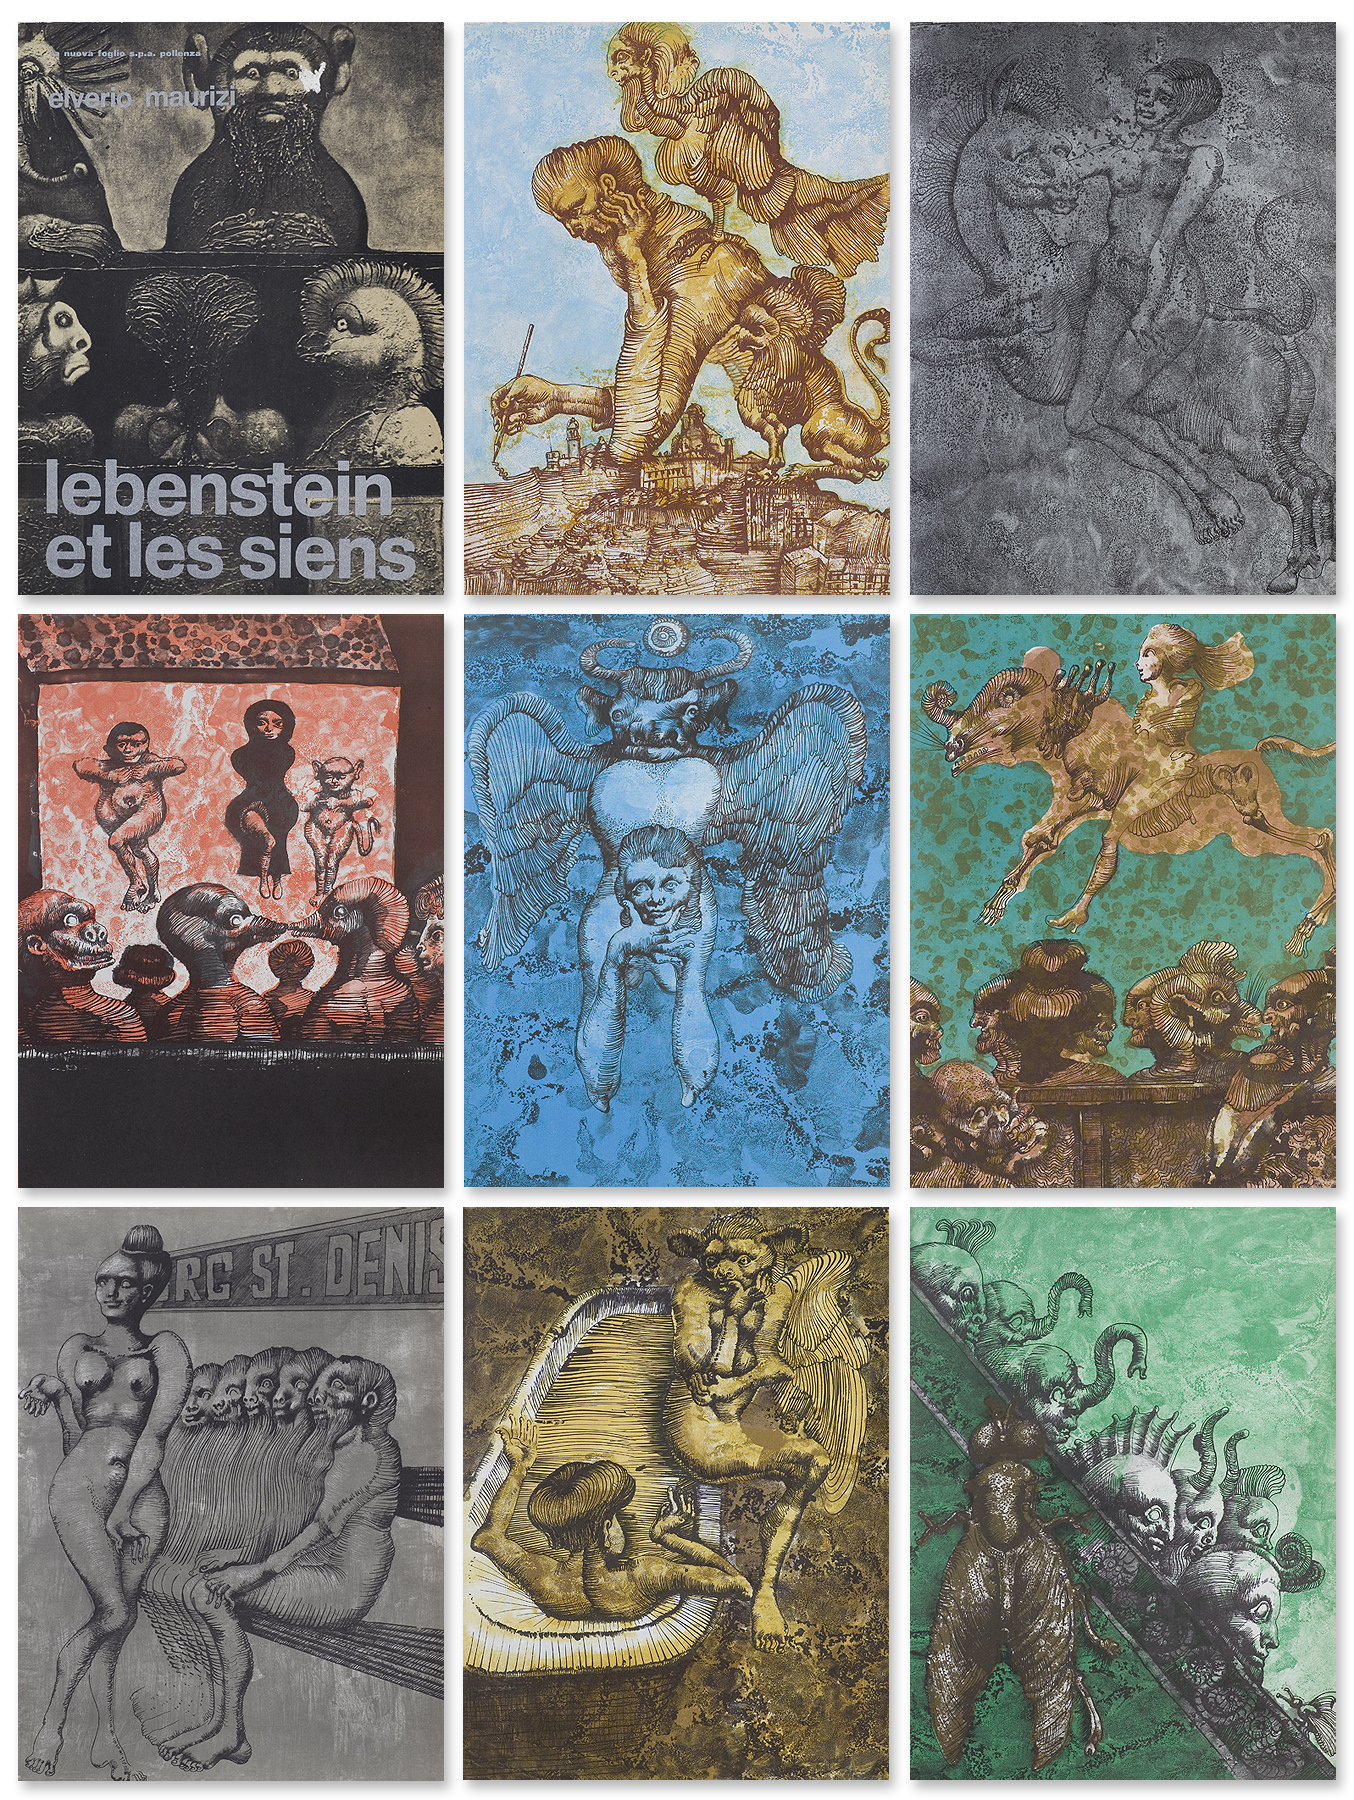 Jan Lebenstein, LEBENSTEIN ET LES SIENS, 1972